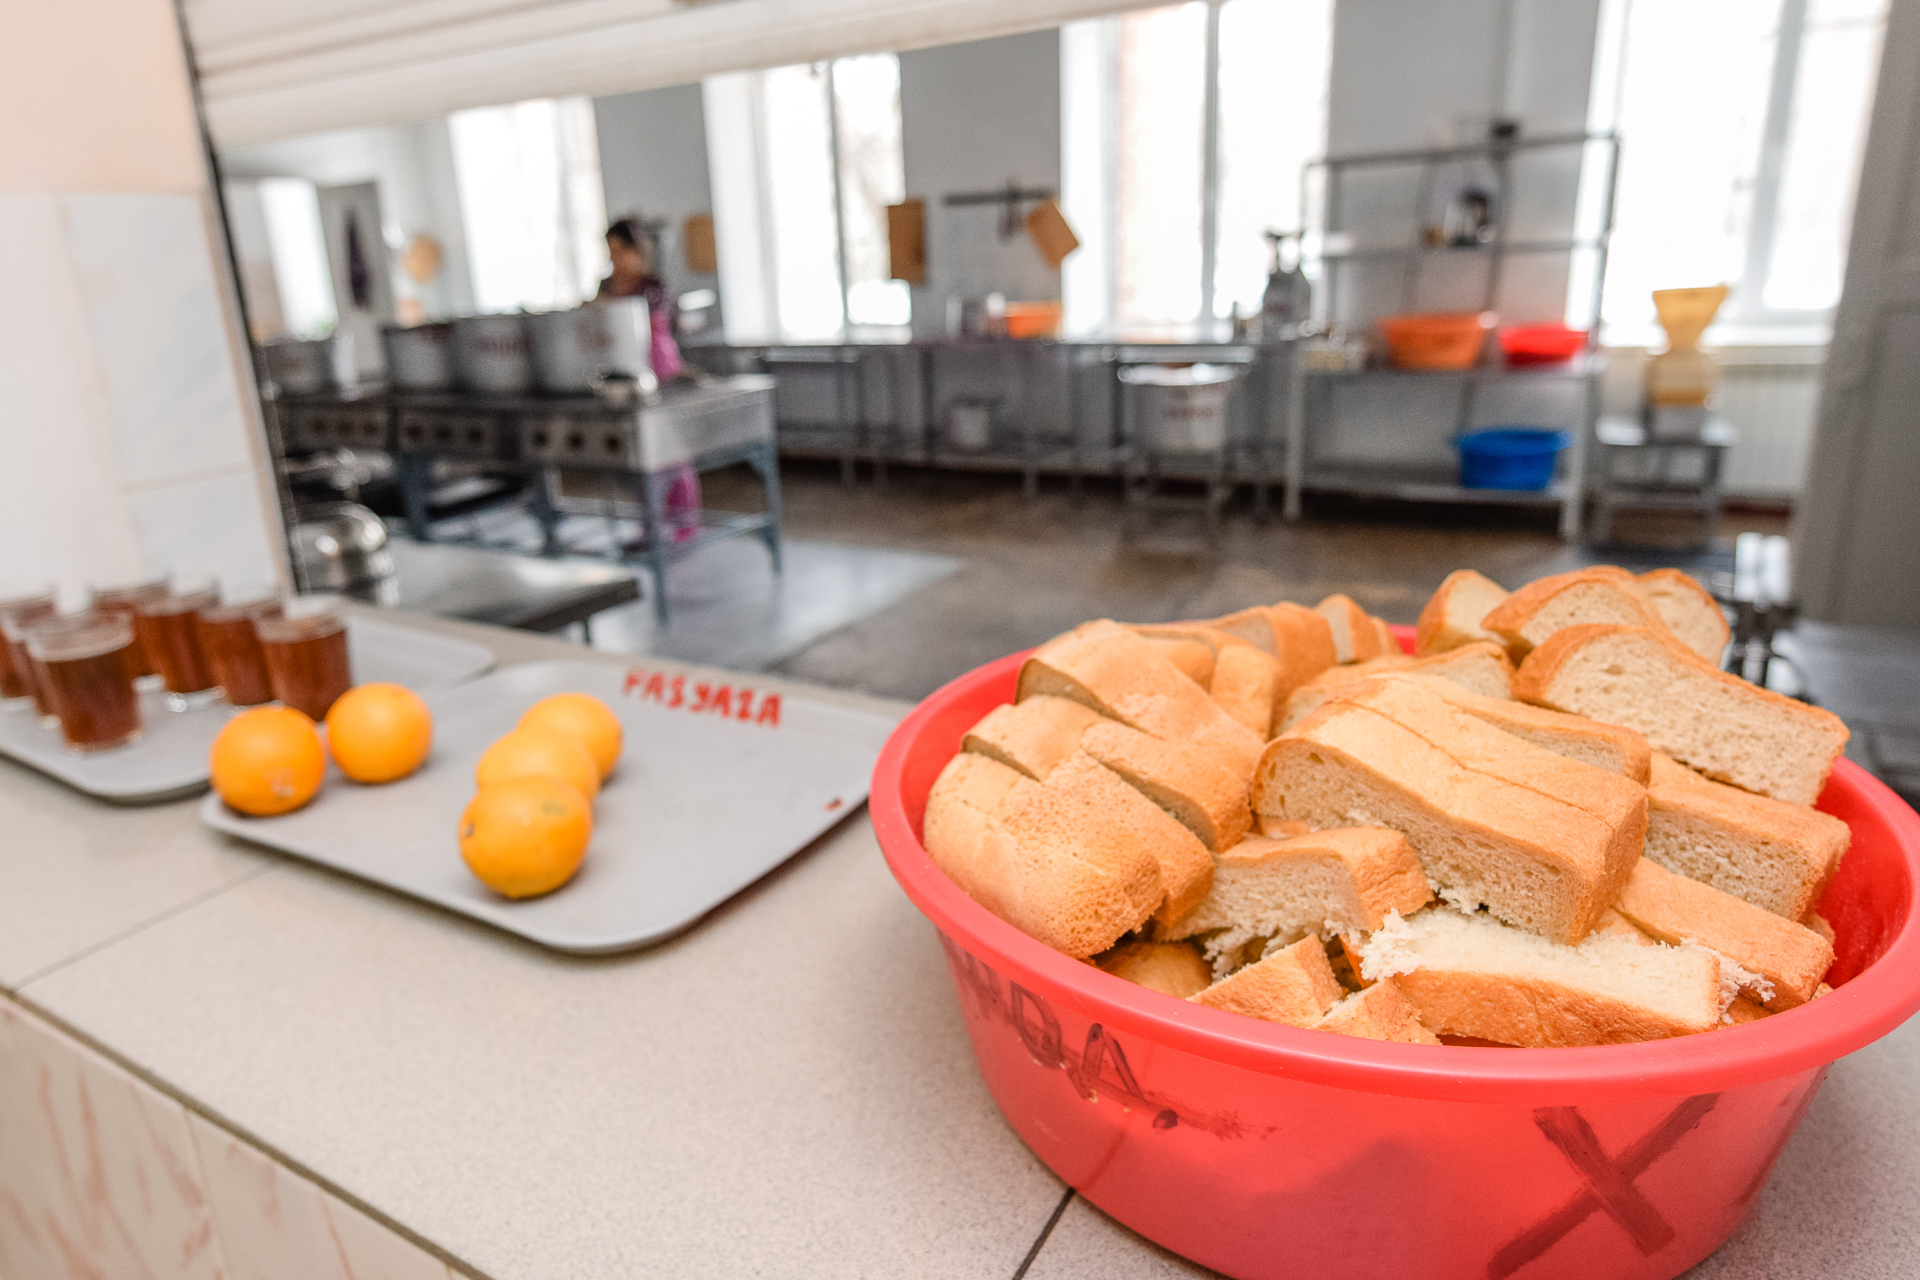 В омских школах, детсадах и больницах готовили еду из опасного фальсификата